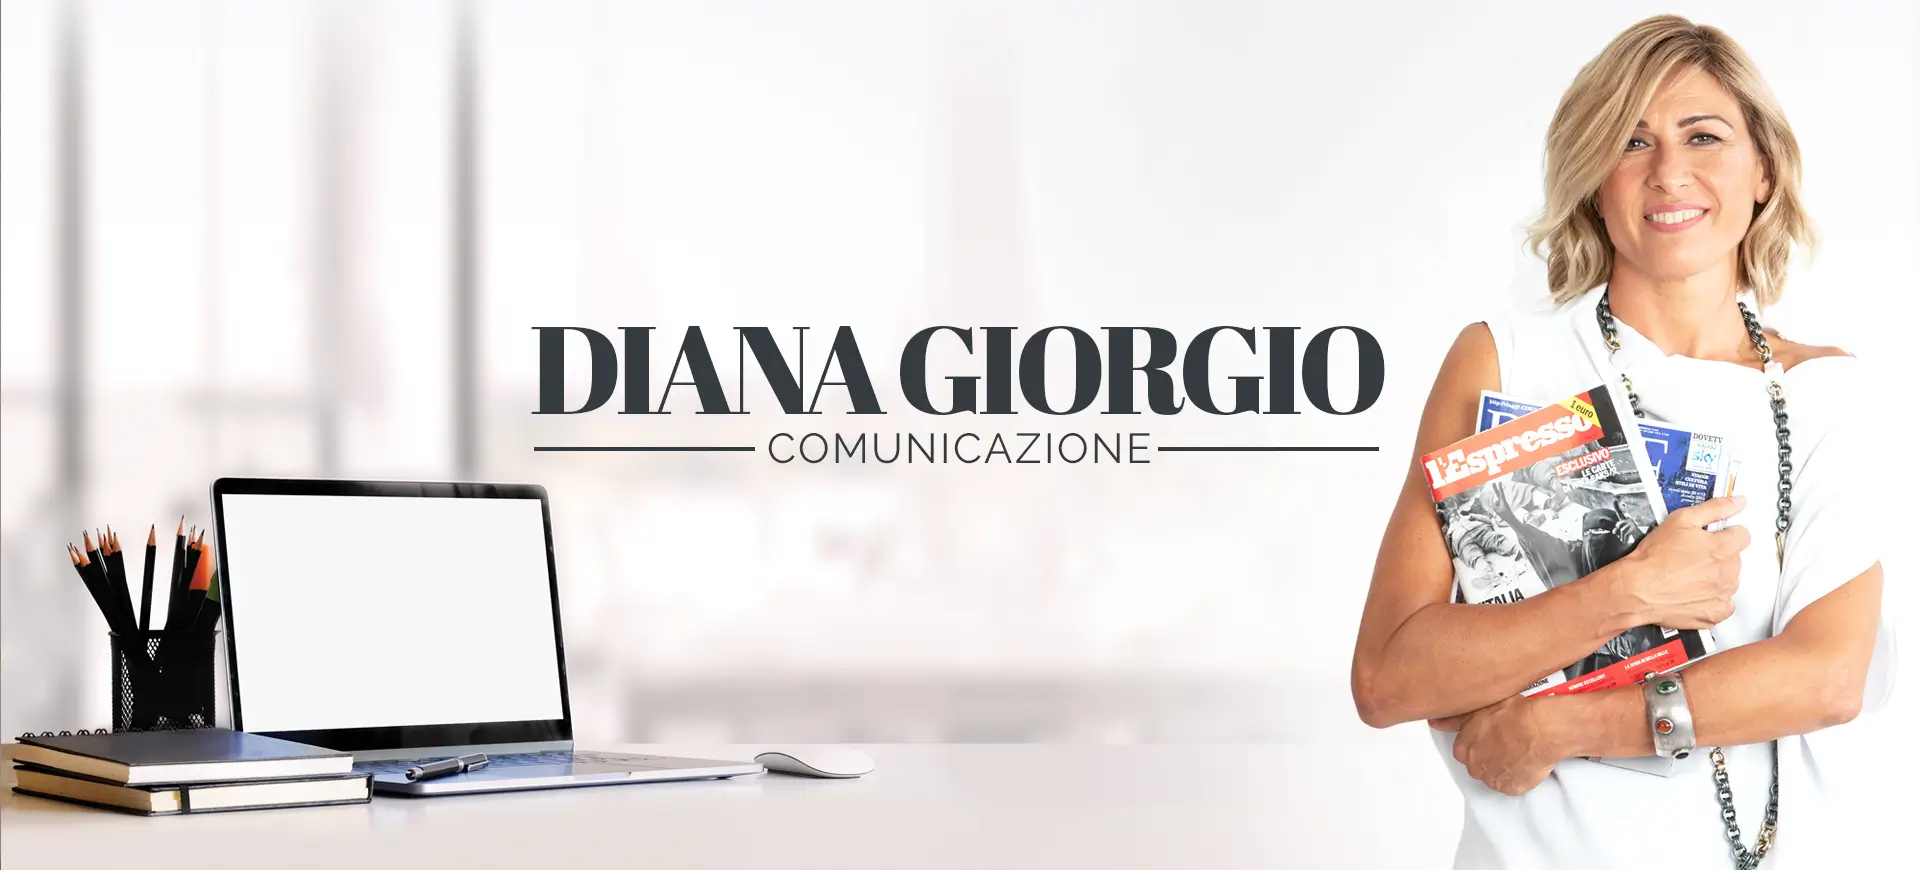 Diana Giorgio comunicazione home